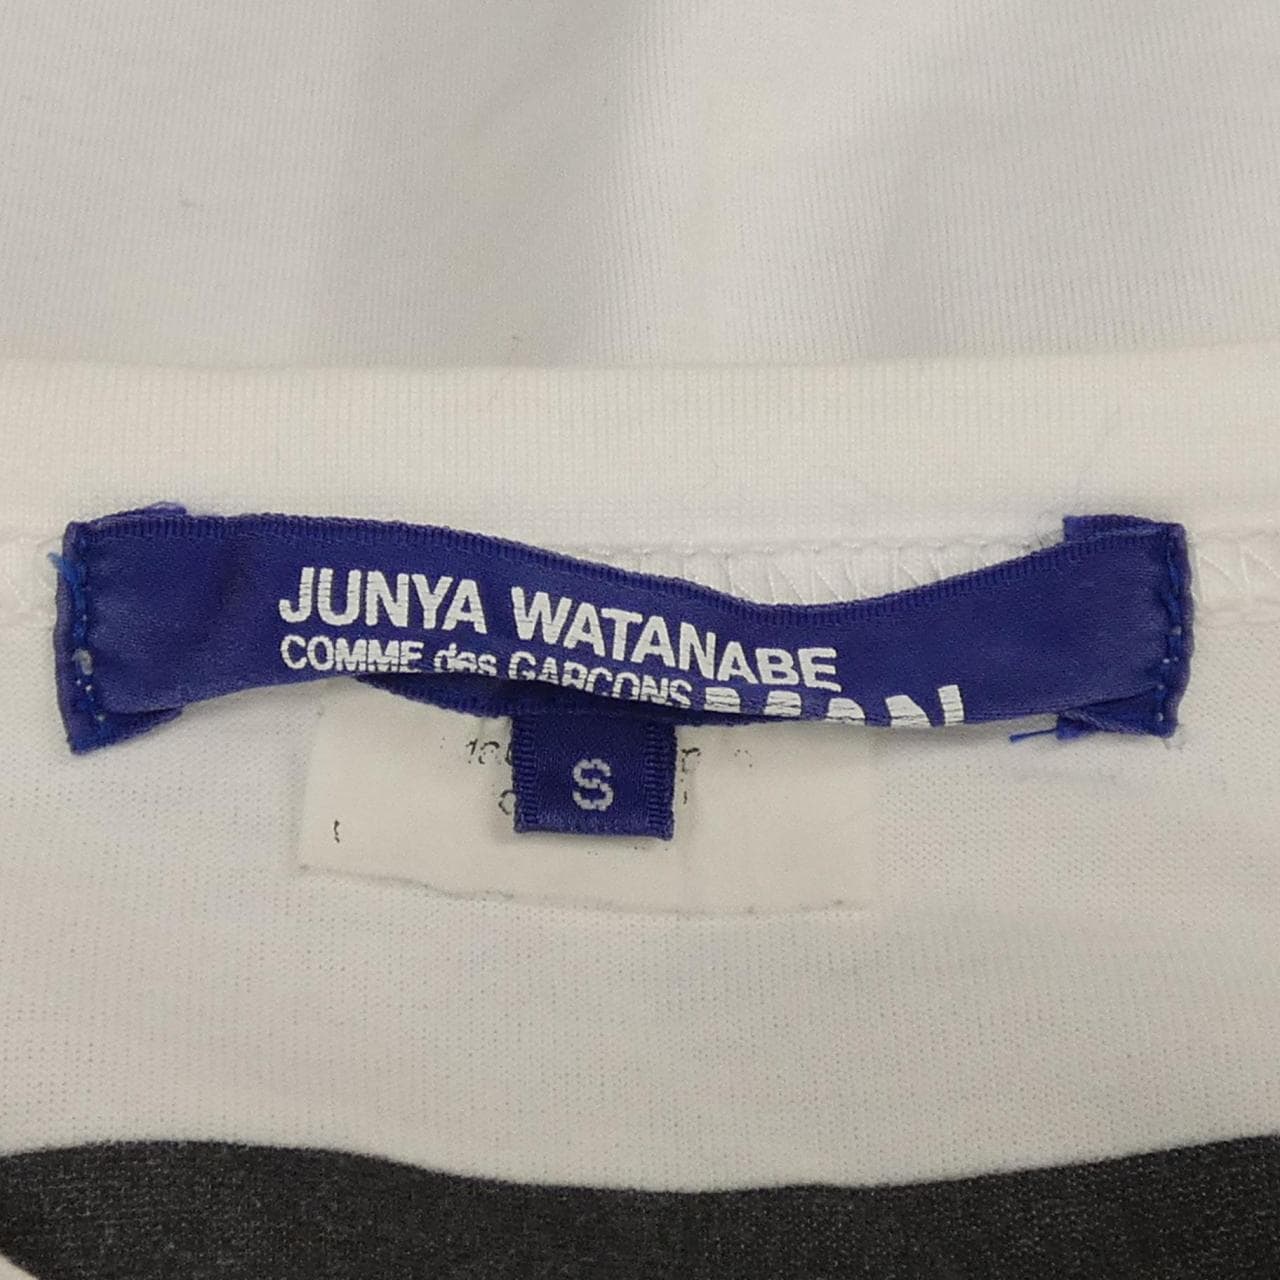 ジュンヤワタナベマン JUNYA WATANABE MAN Tシャツ